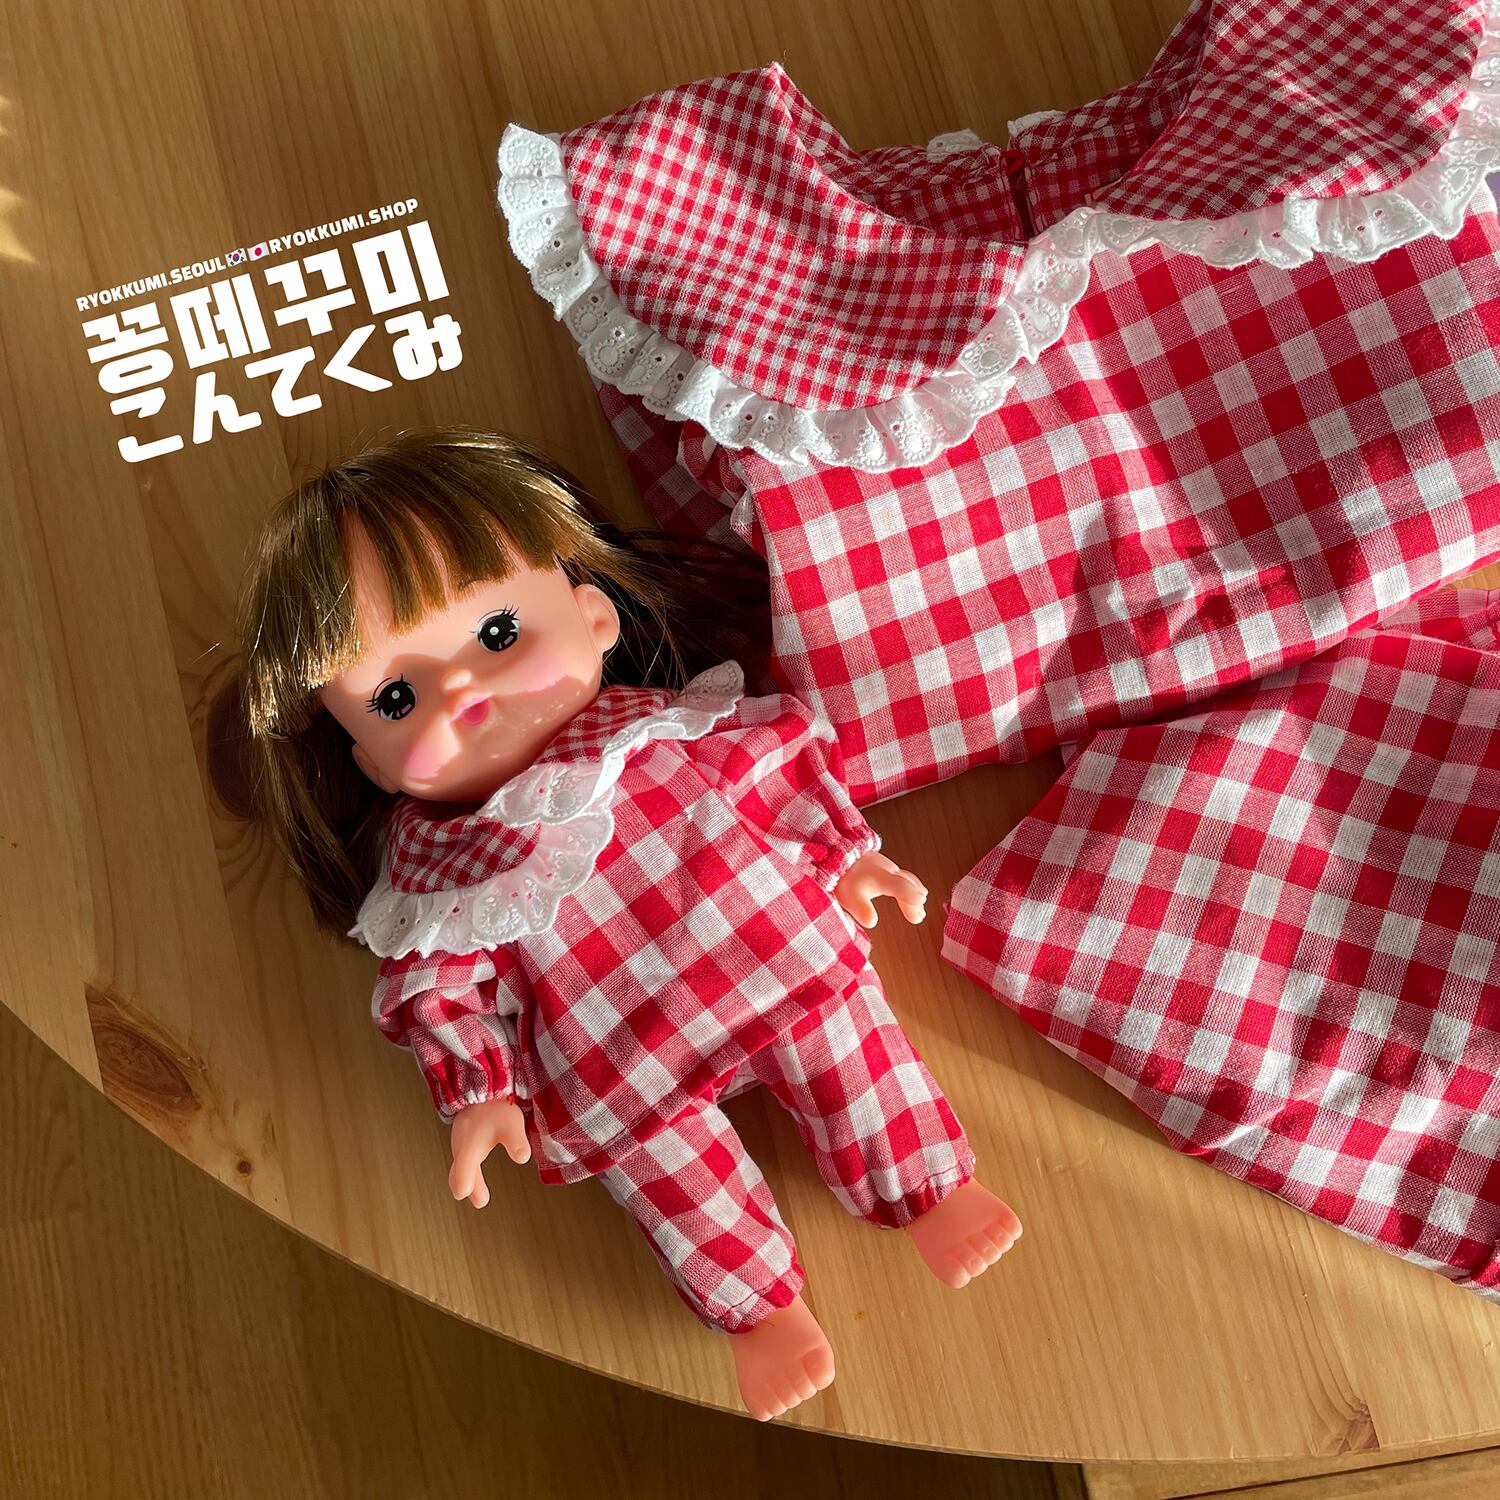 りょくみ限定 こんてくみにみ お人形服 韓国子供服 りょくみショップ Ryokkumi Shop りょくみショップ 韓国子供服